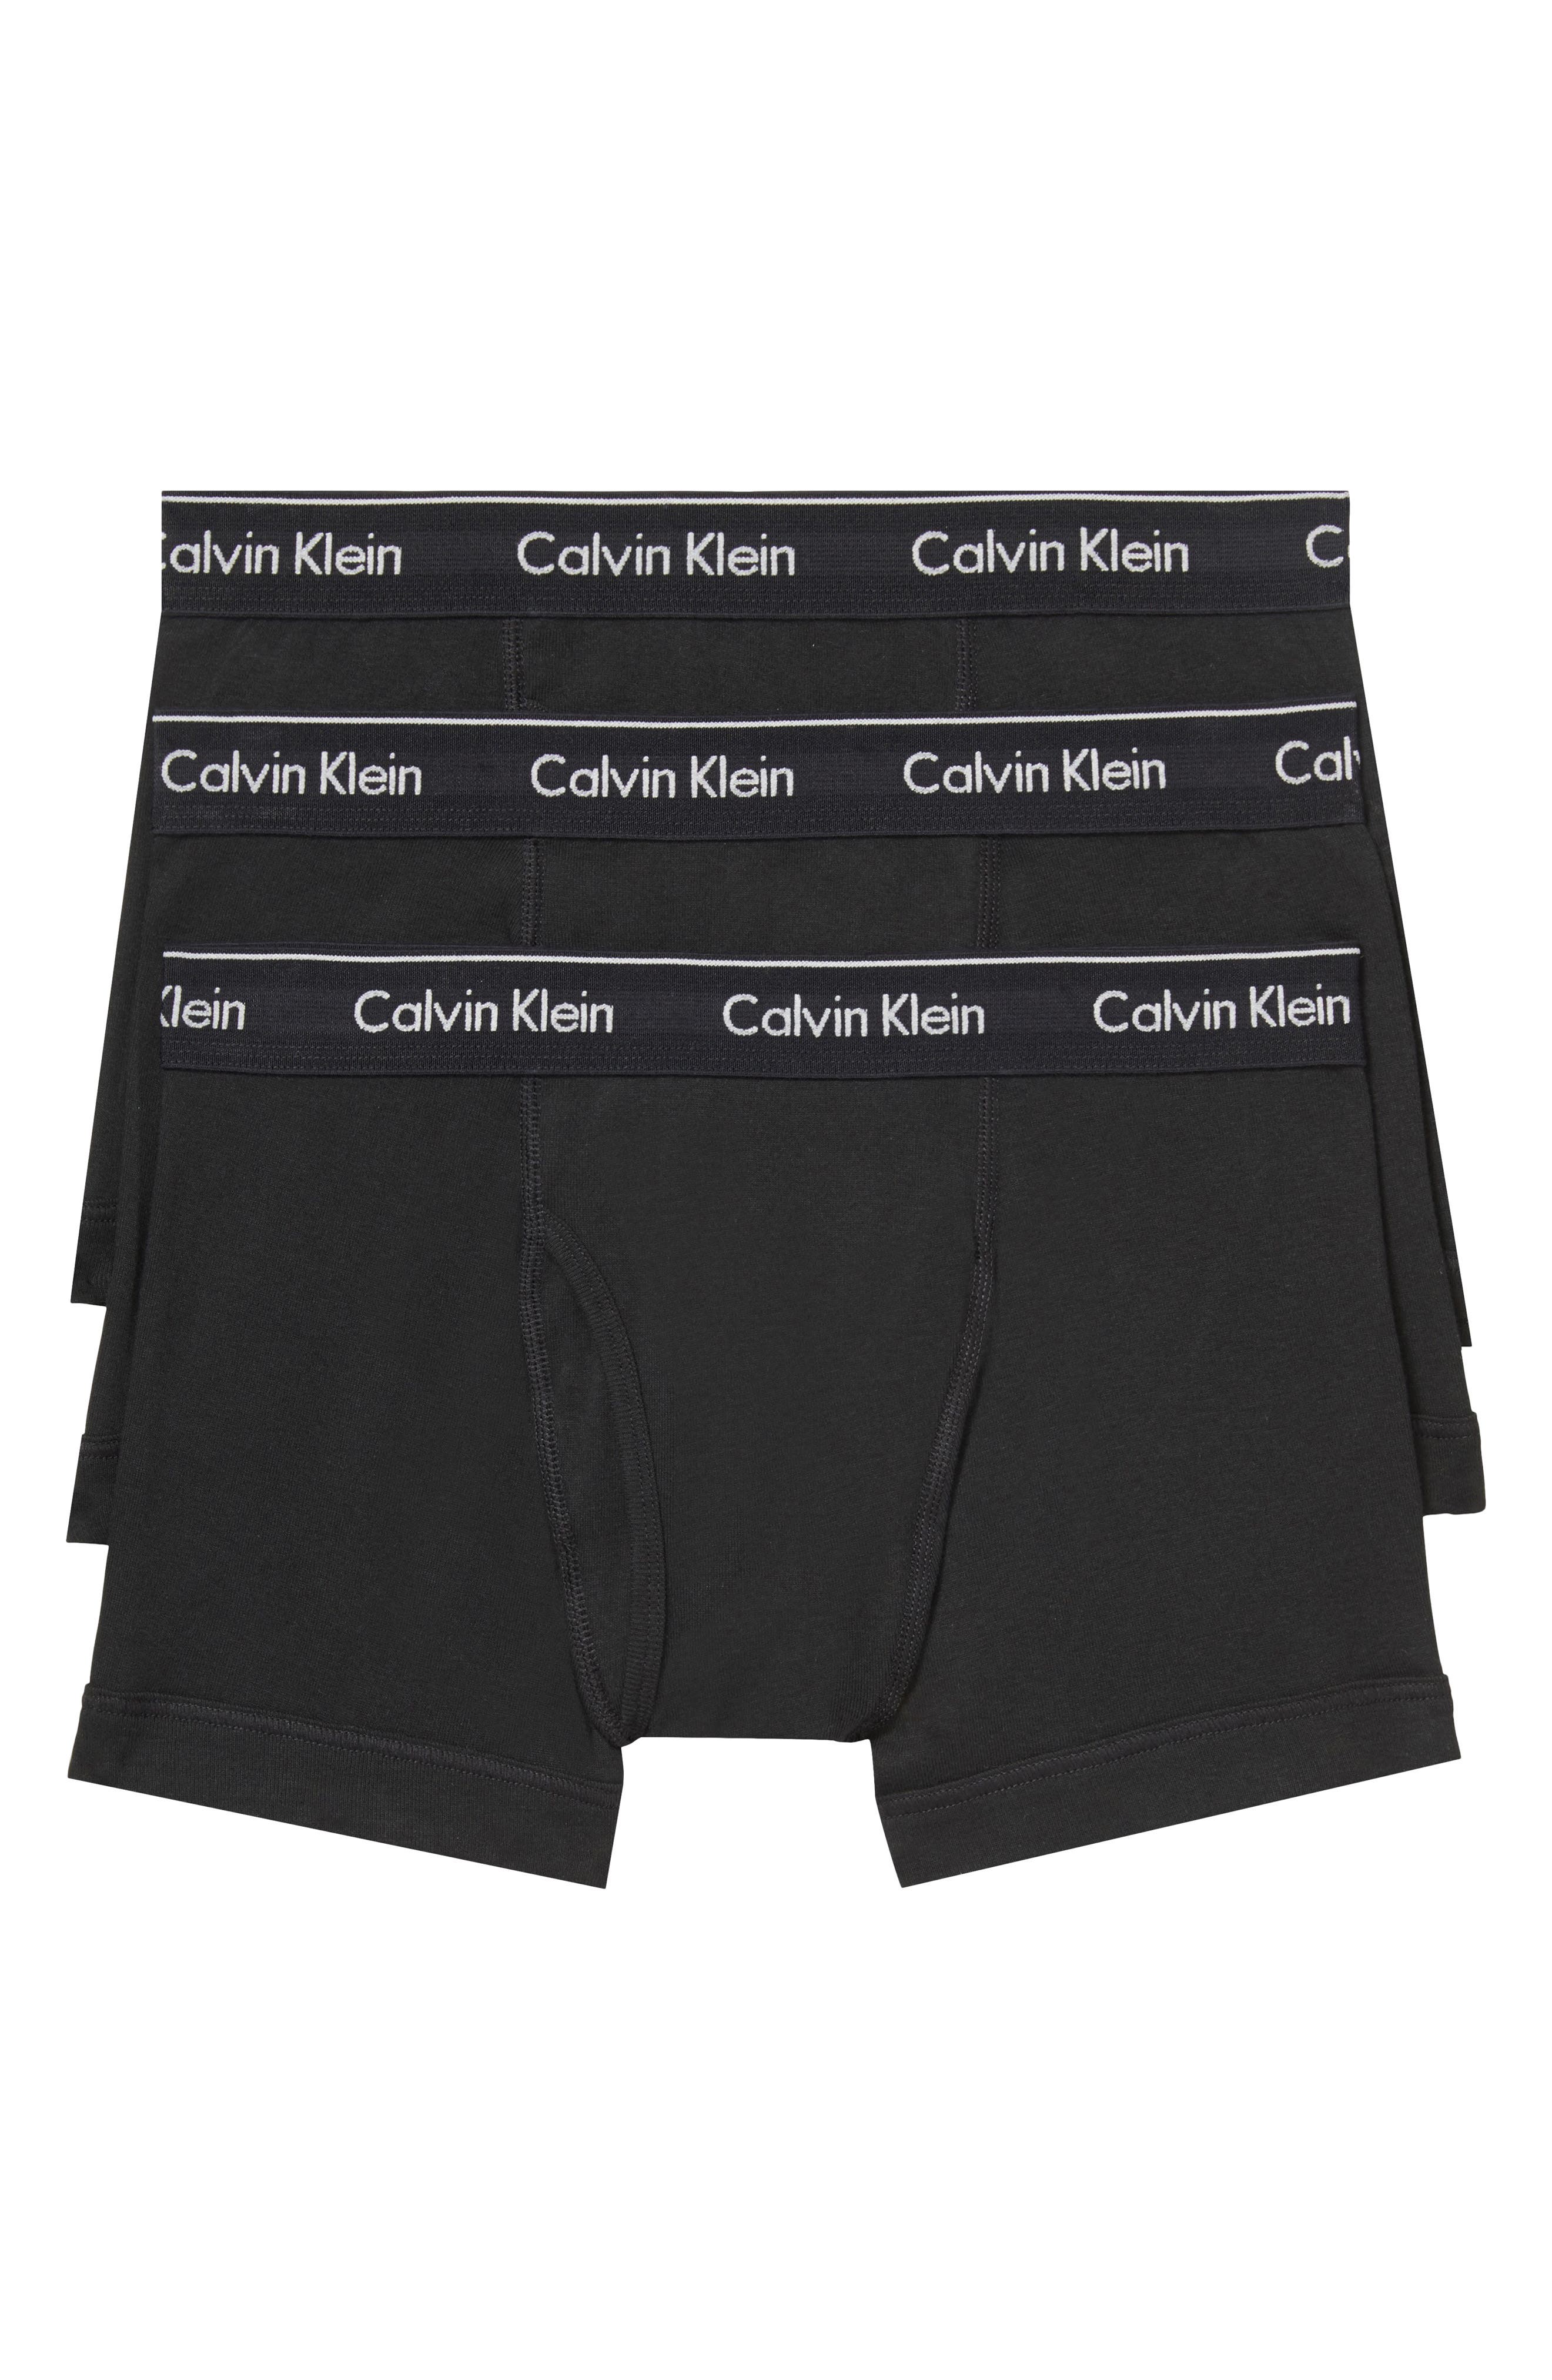 Black Calvin Klein Calvin Klein 3-Pack Pure Cotton Men's Briefs 